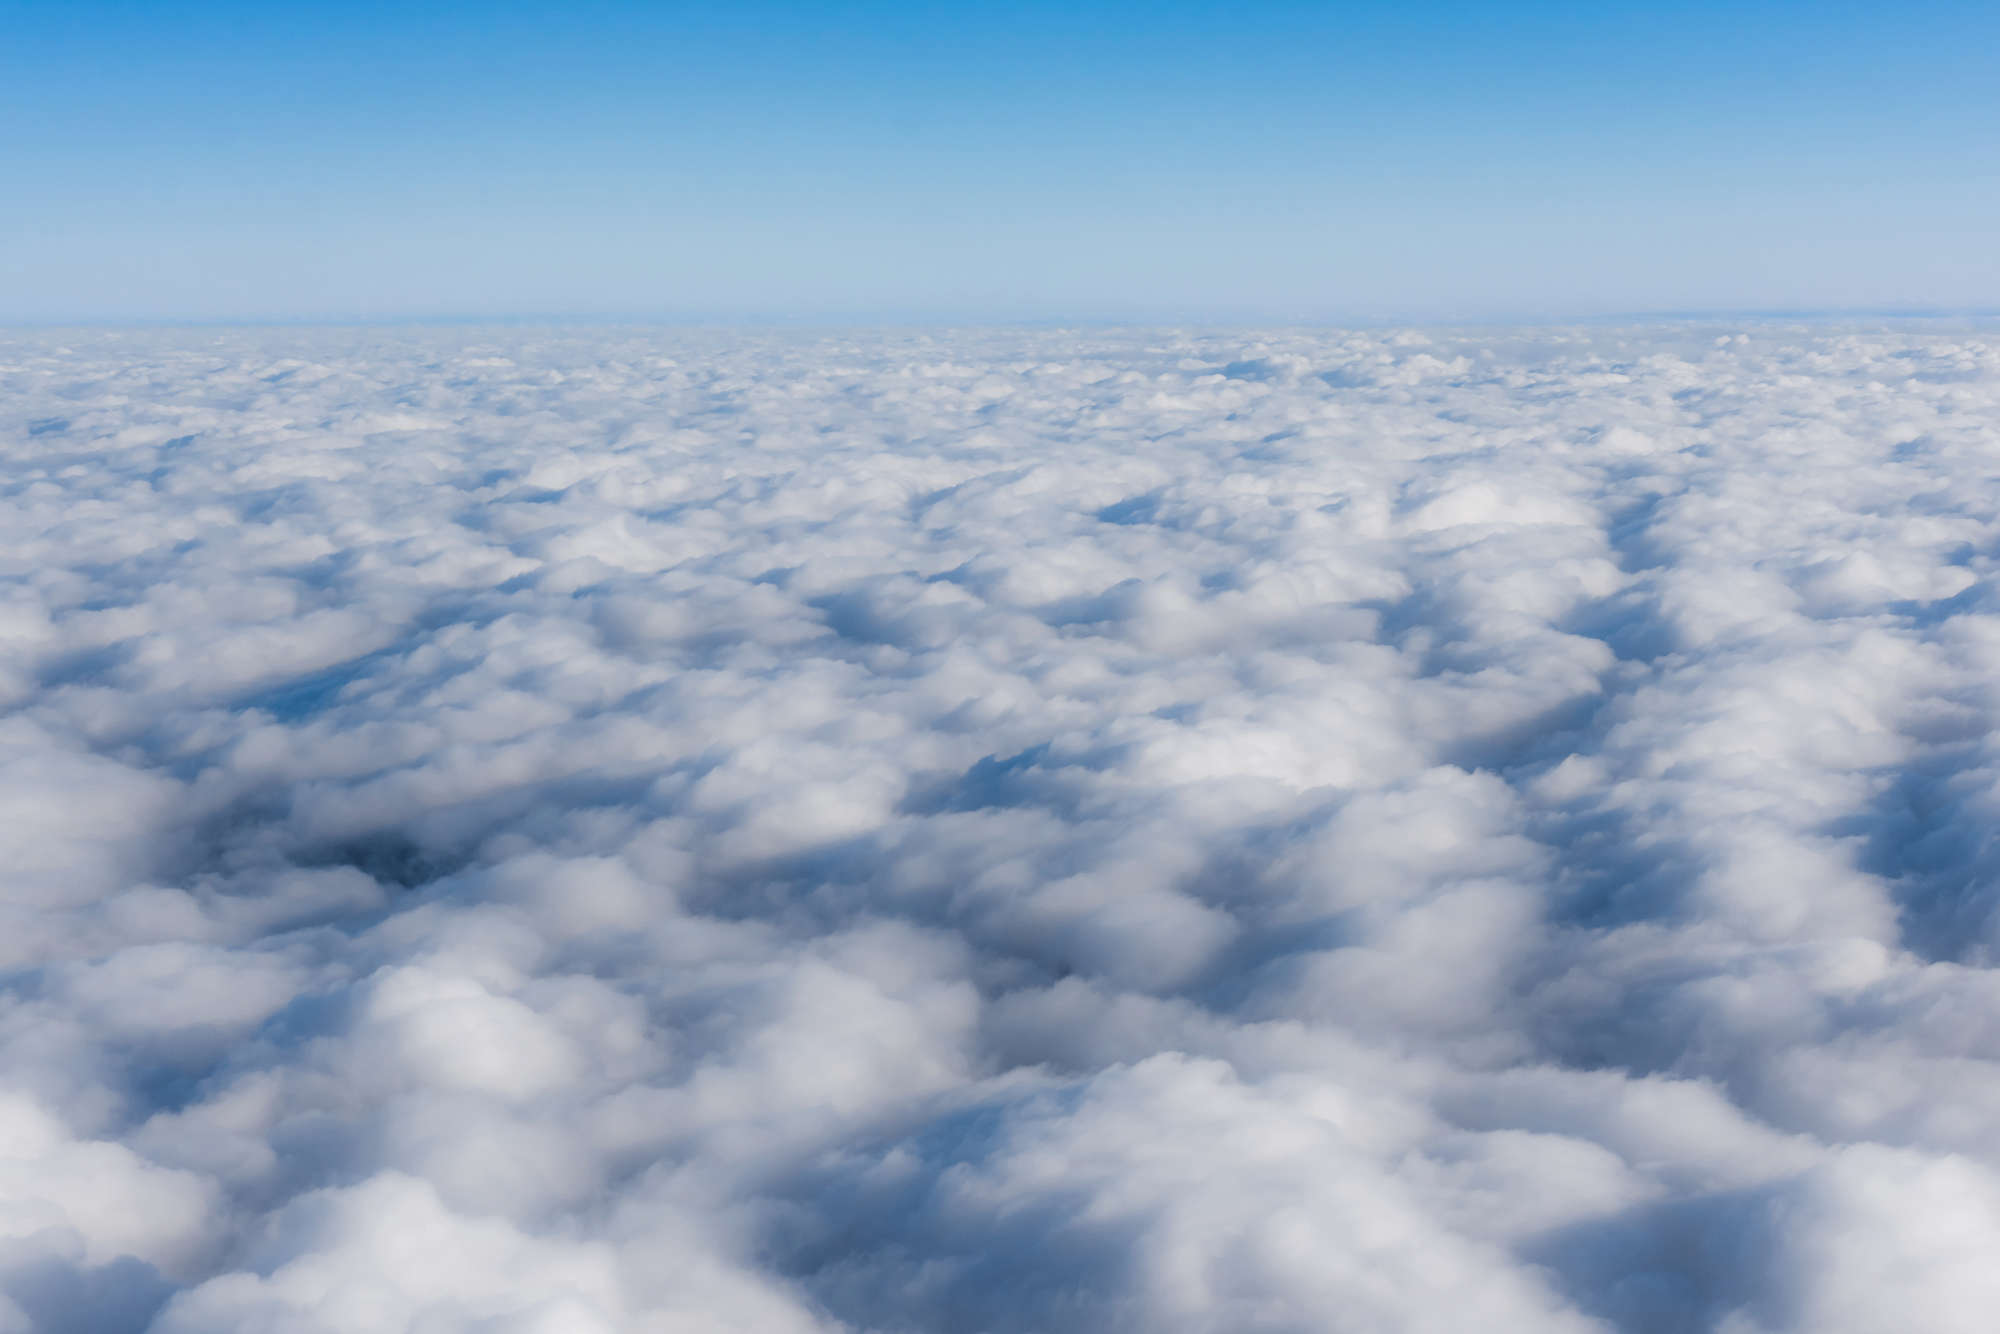             Natur Fototapete über den Wolken auf Premium Glattvlies
        